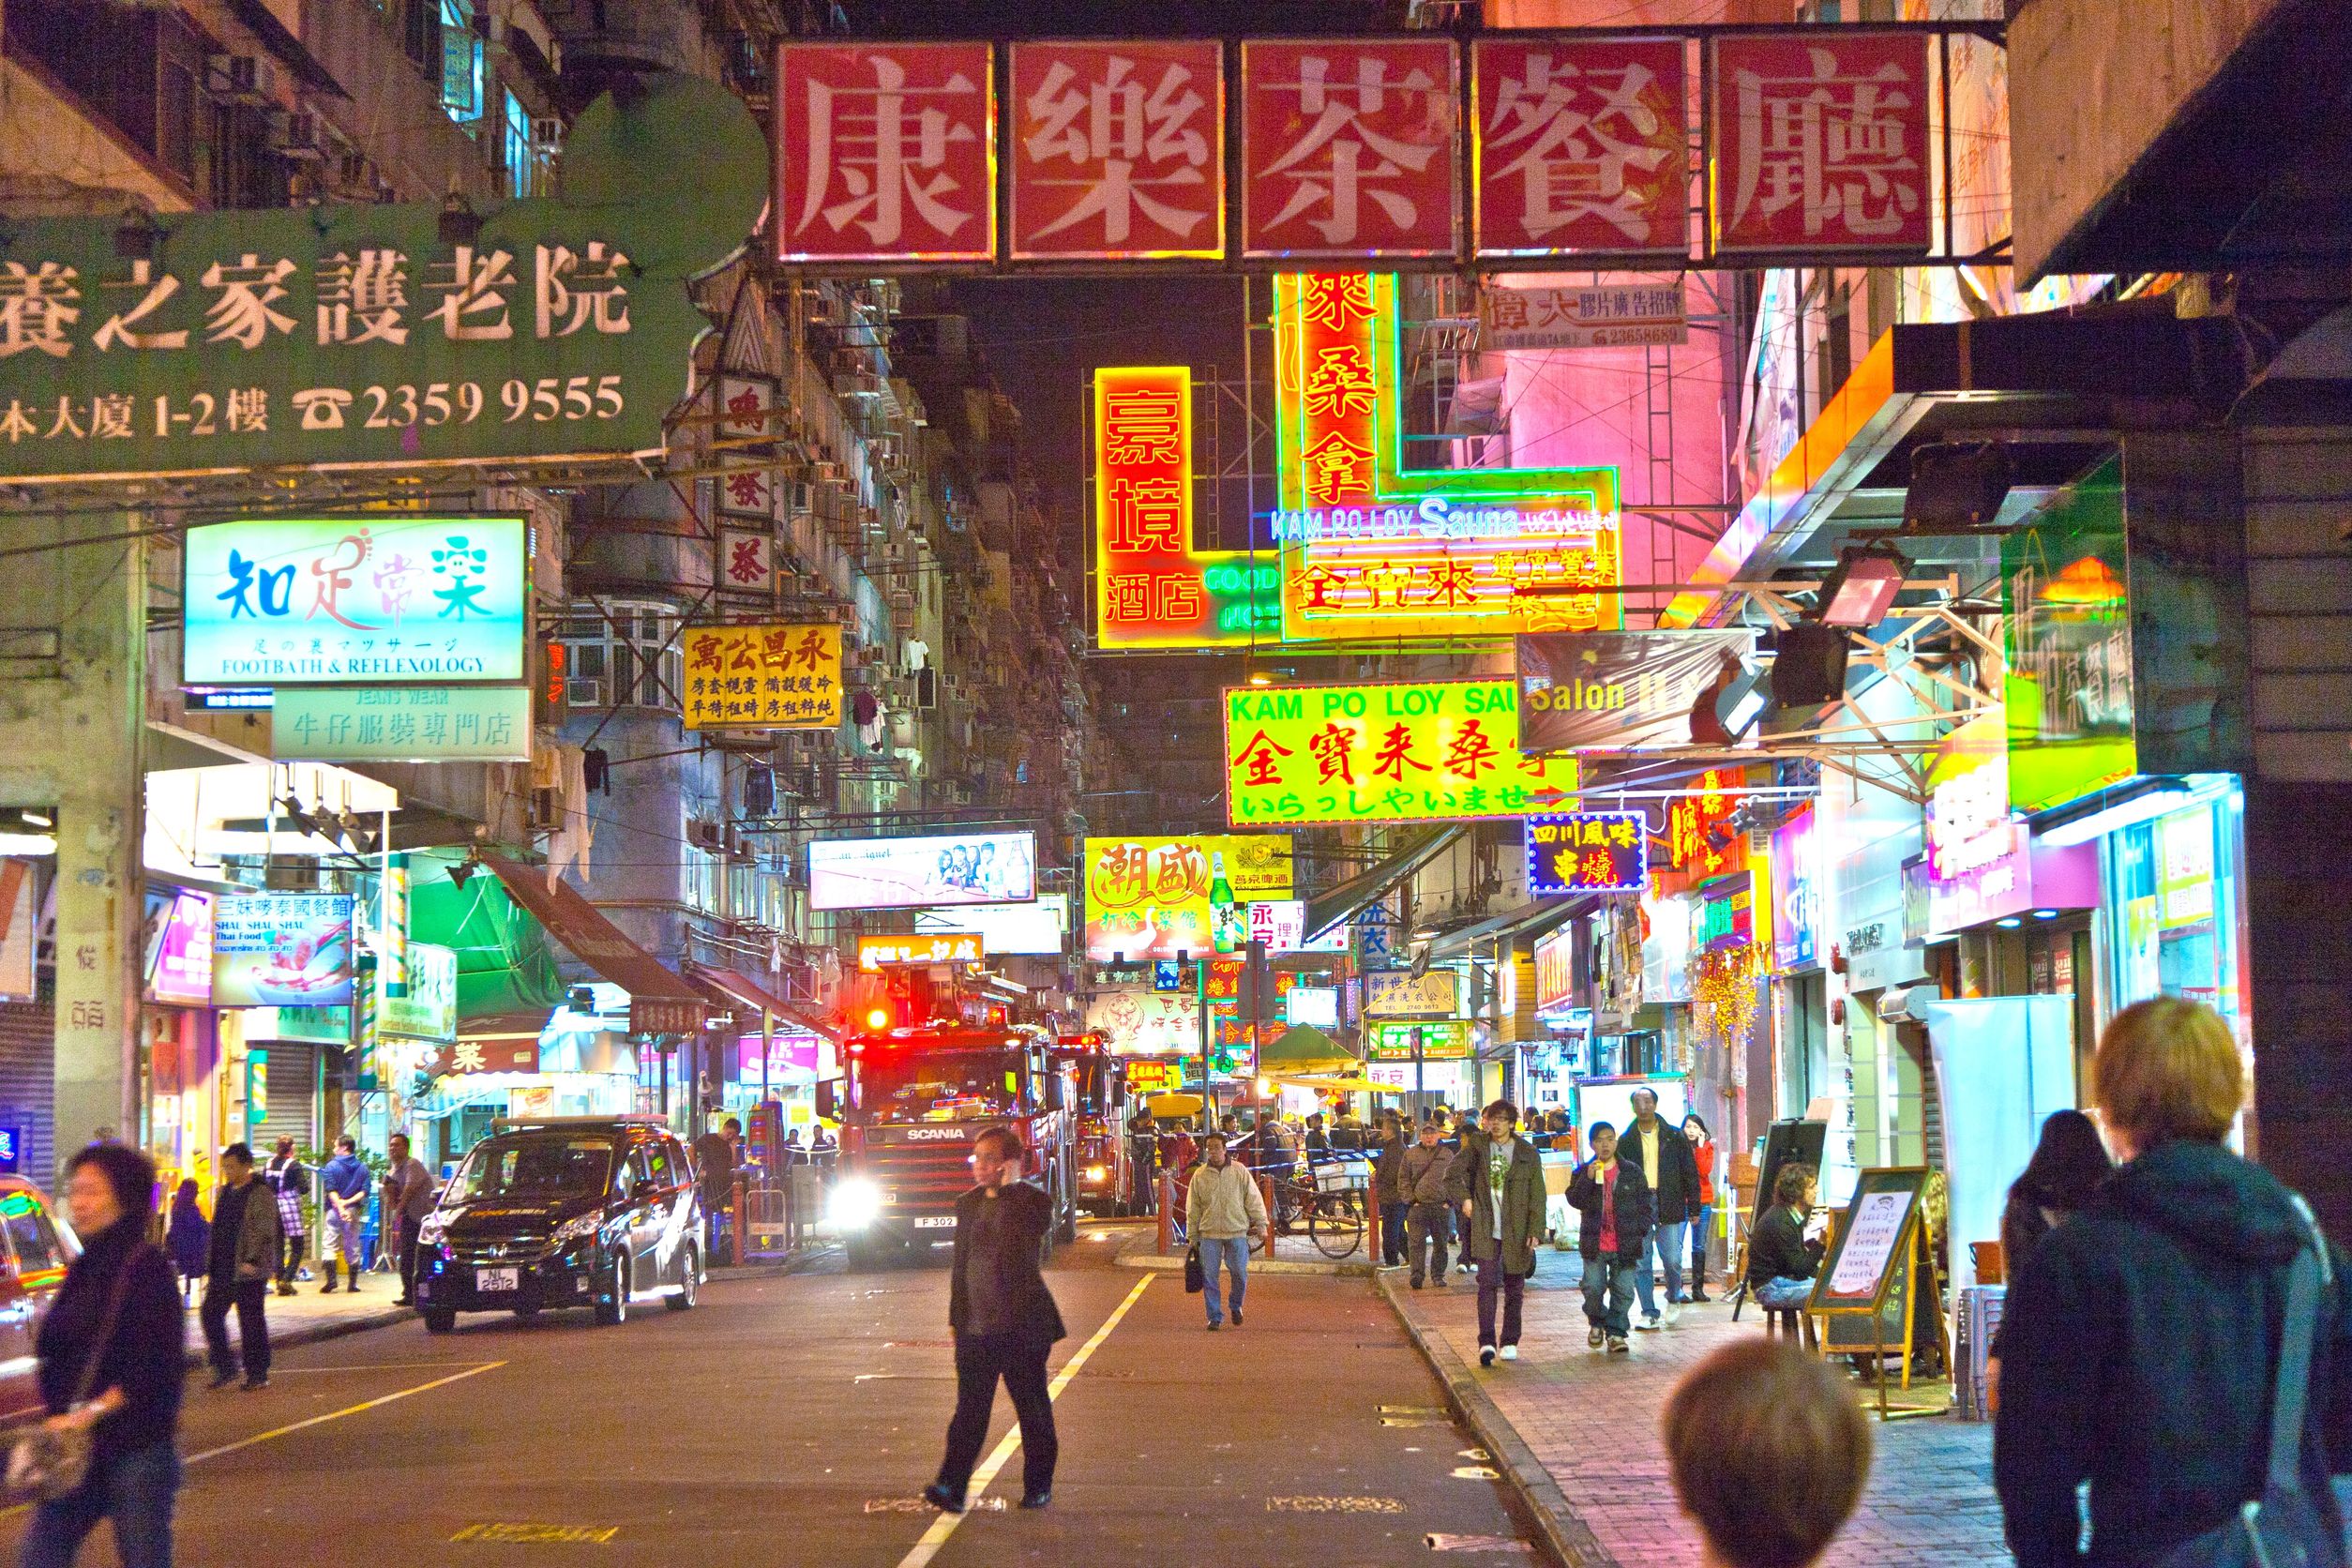 Hong Kong Macau with Shenzhen